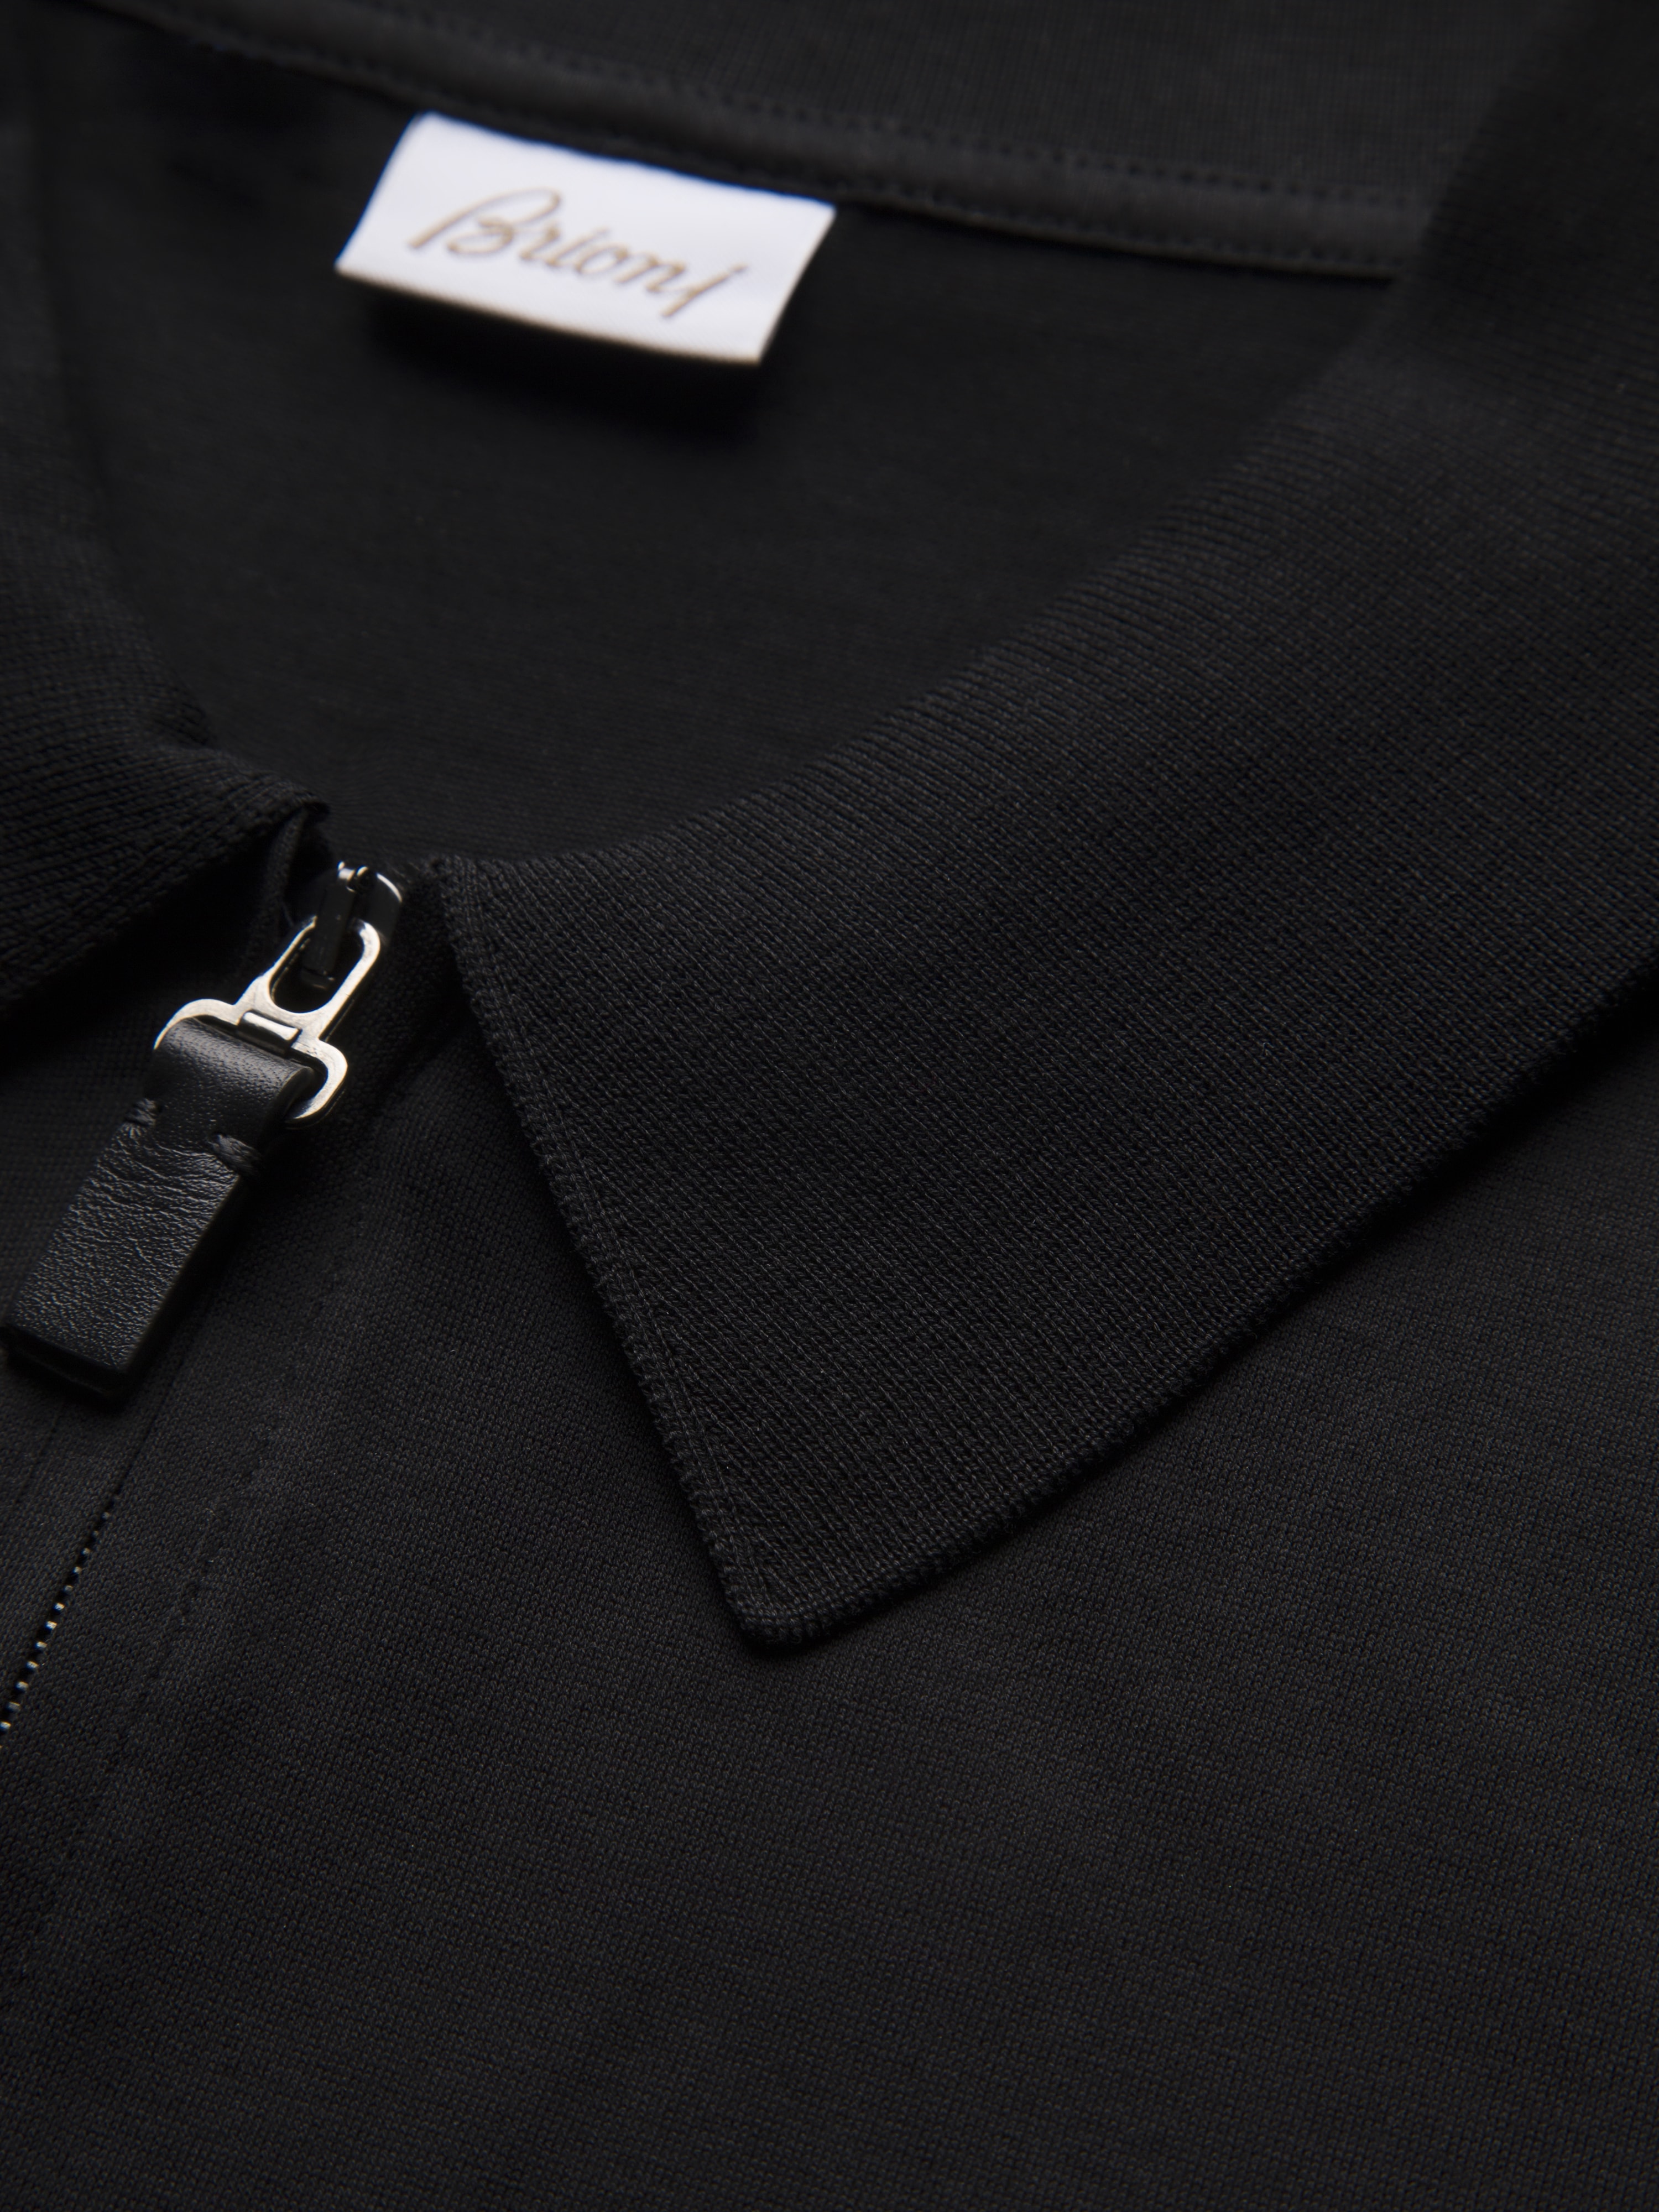 ブラック ジップポロシャツ | ブリオーニ® 日本 公式ストア